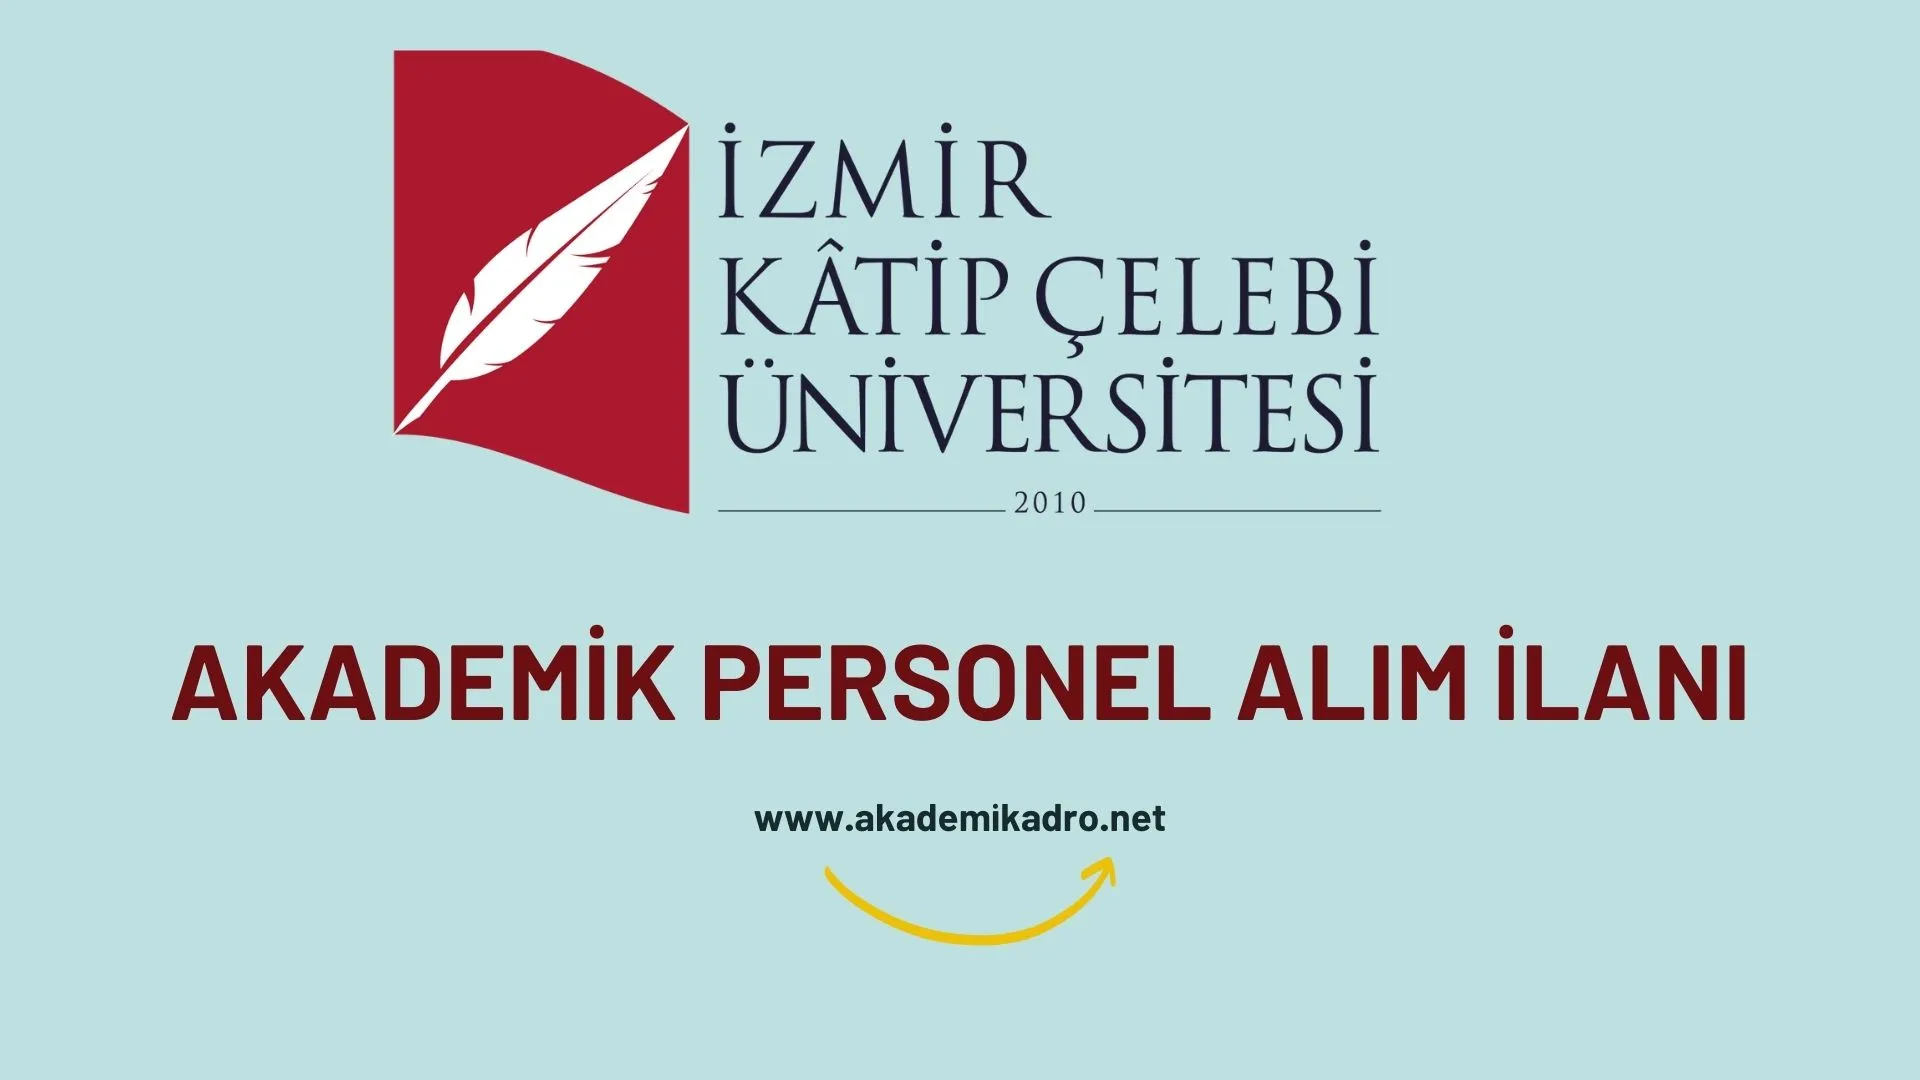 İzmir Kâtip Çelebi Üniversitesi birçok alandan 30 akademik personel alacak.